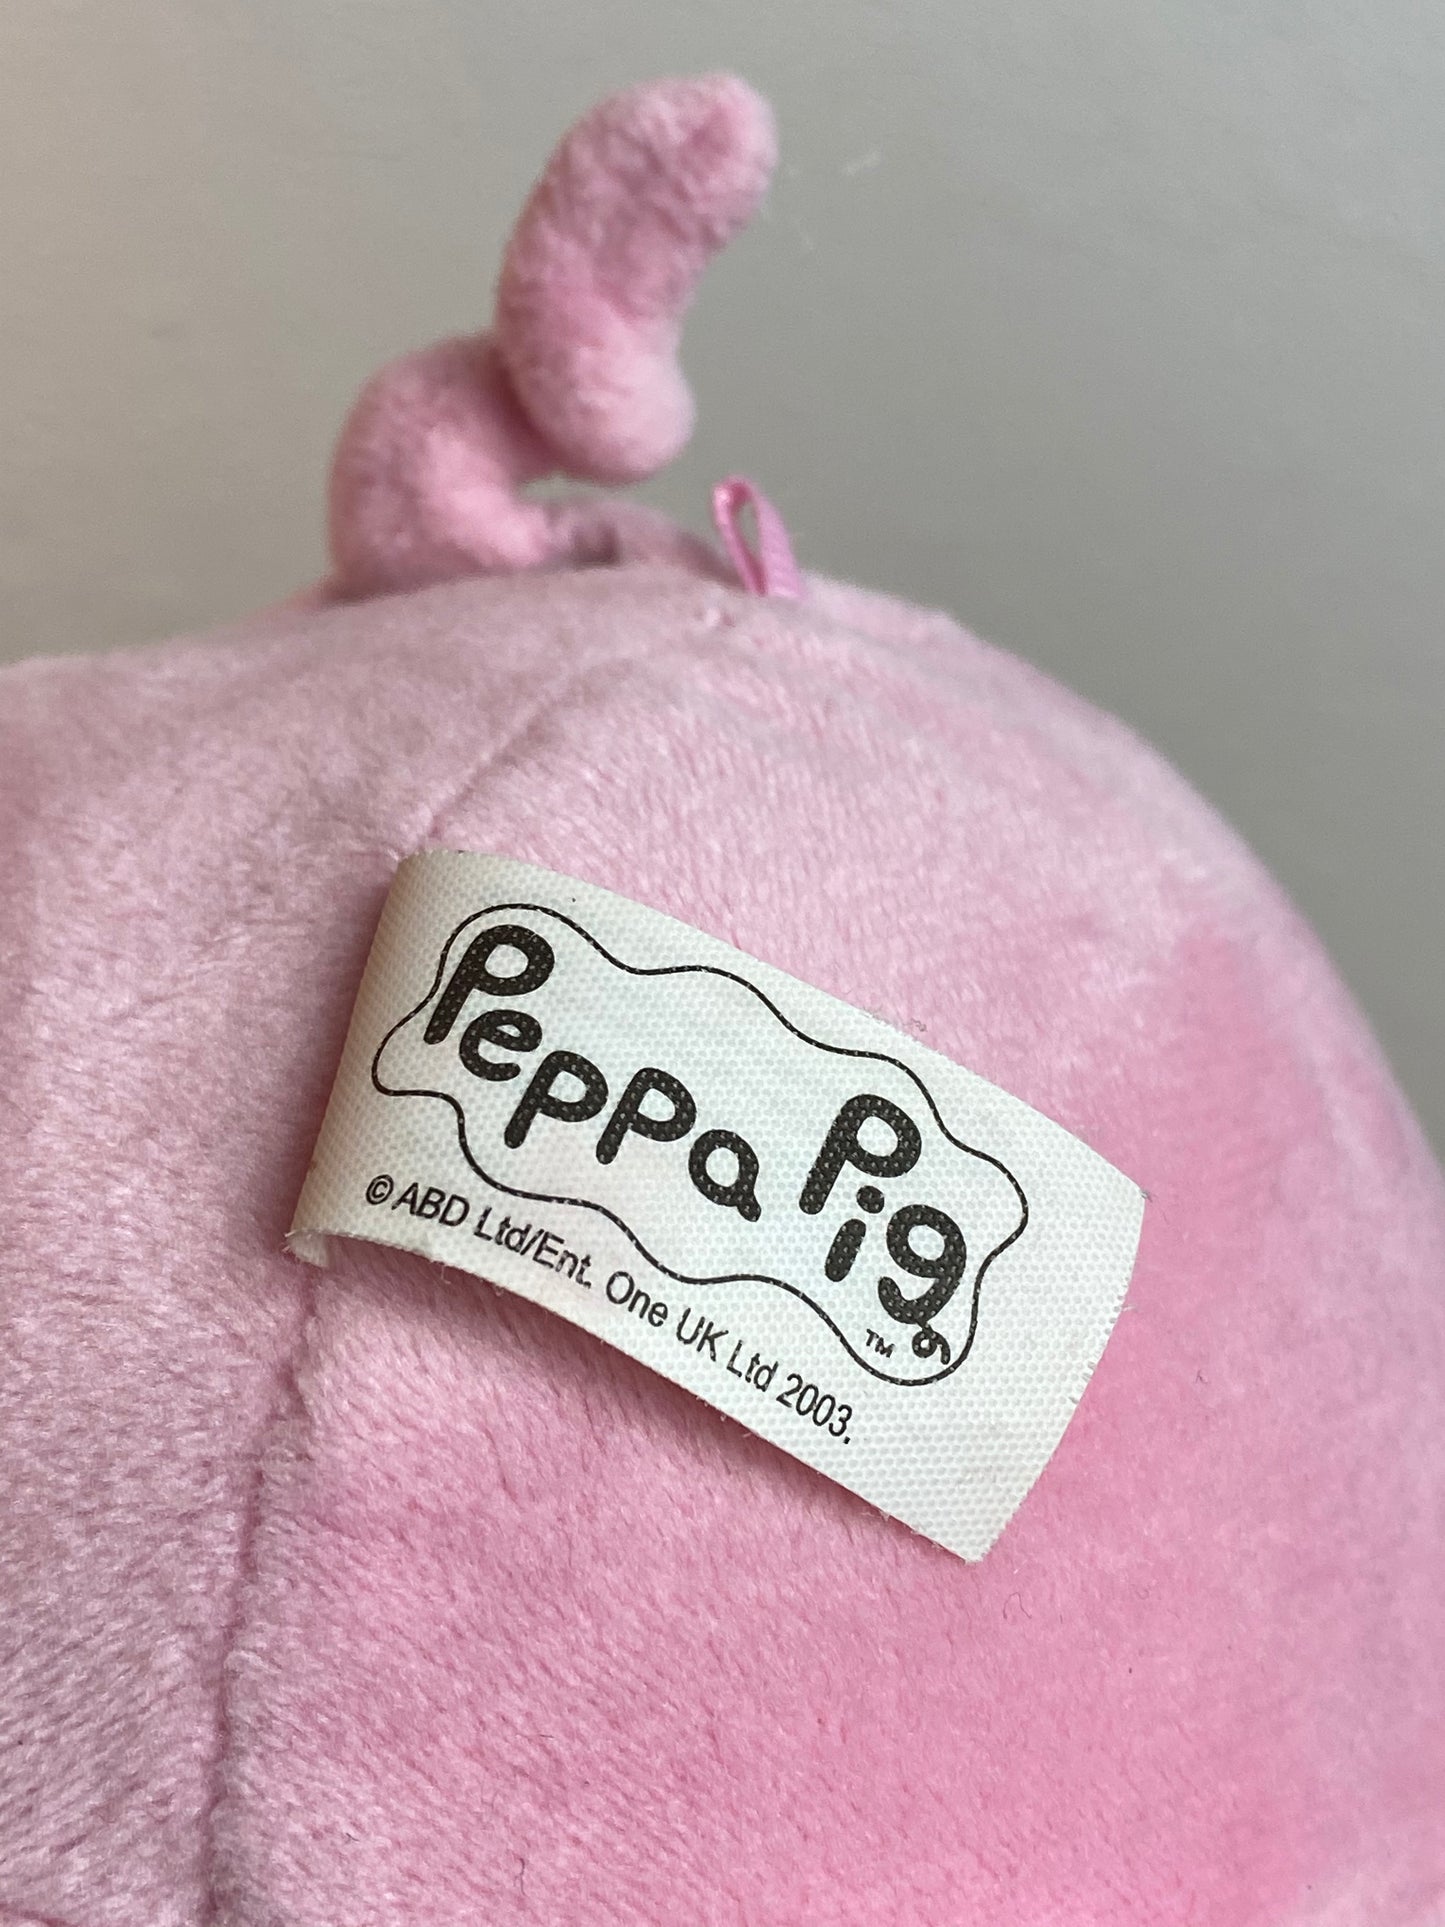 2003 Peppa Pig Plush